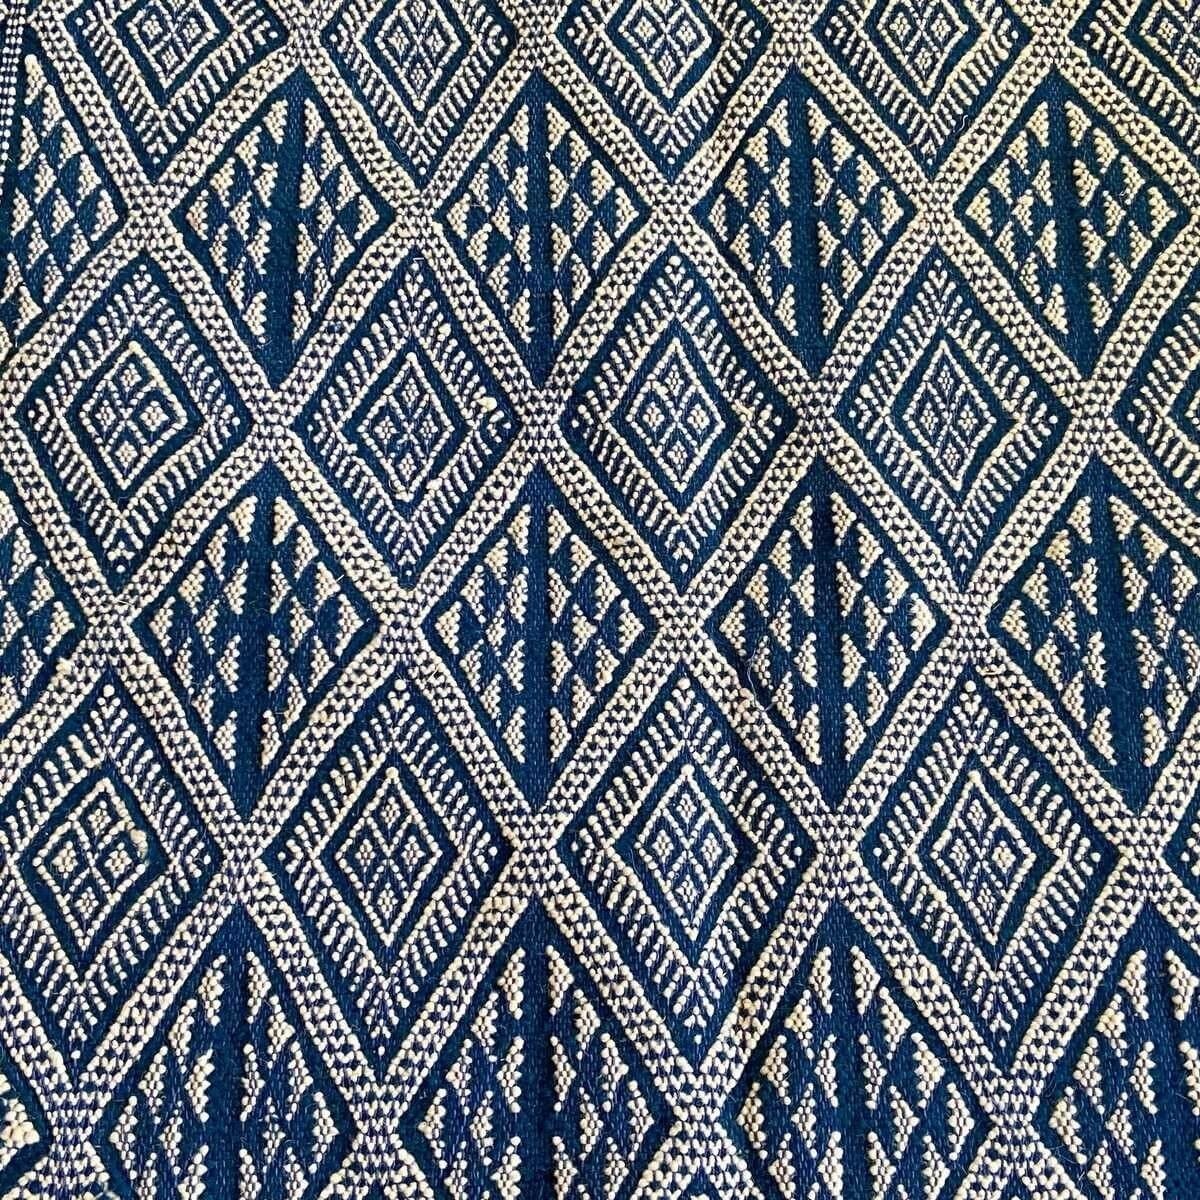 Berber tapijt Tapijt Margoum Makki 124x186 Blauw (Handgeweven, Wol, Tunesië) Tunesisch Margoum Tapijt uit de stad Kairouan. Rech